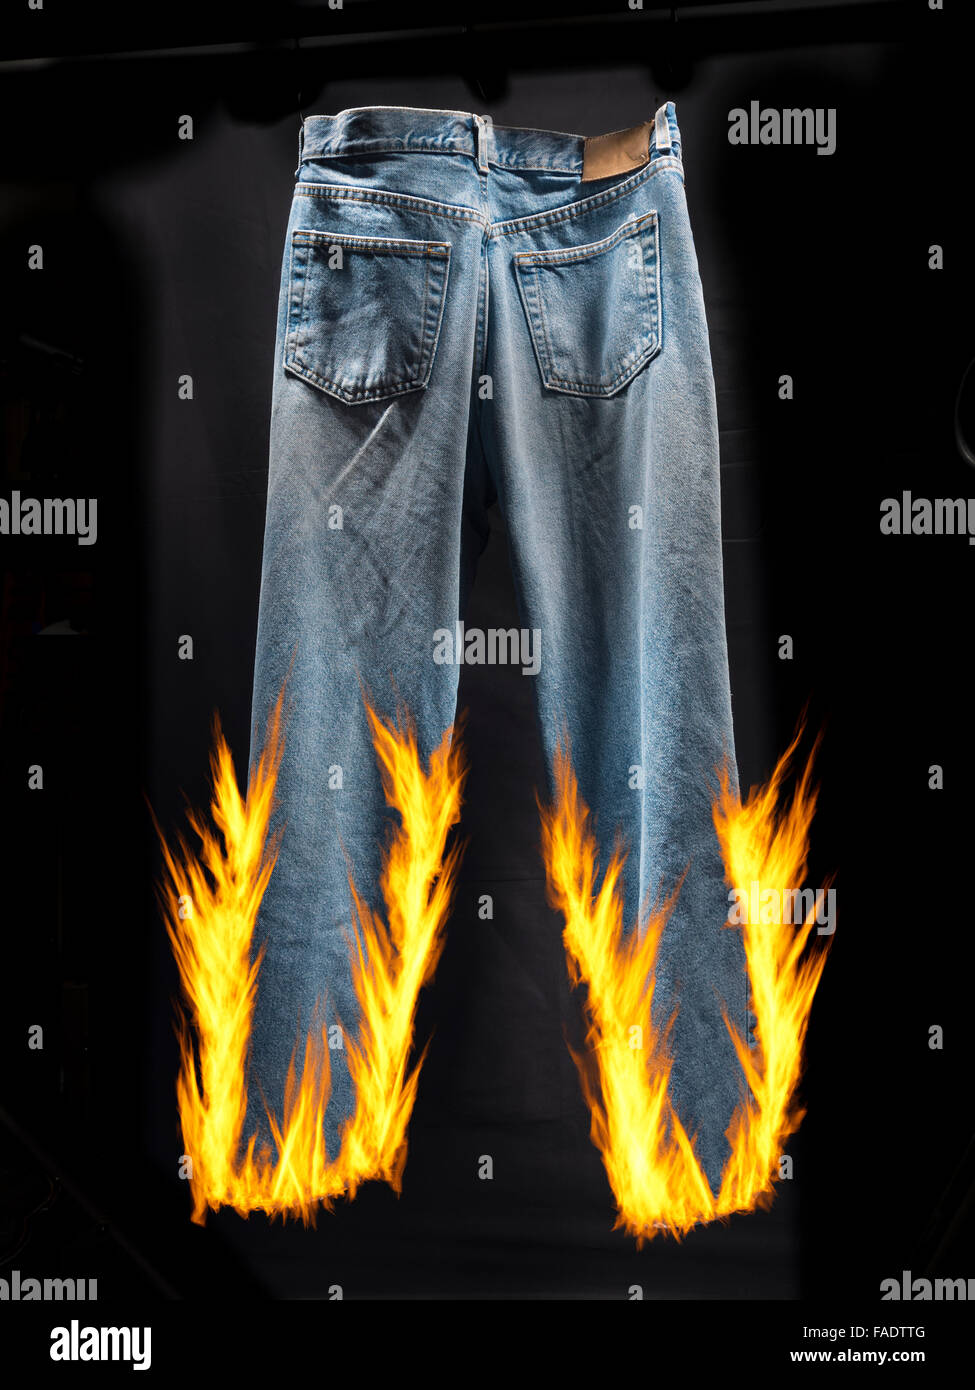 Blaue Jeans Set Feuer und Flamme für Idiom, Lügner, Lügner, Hosen in Brand Stockfoto